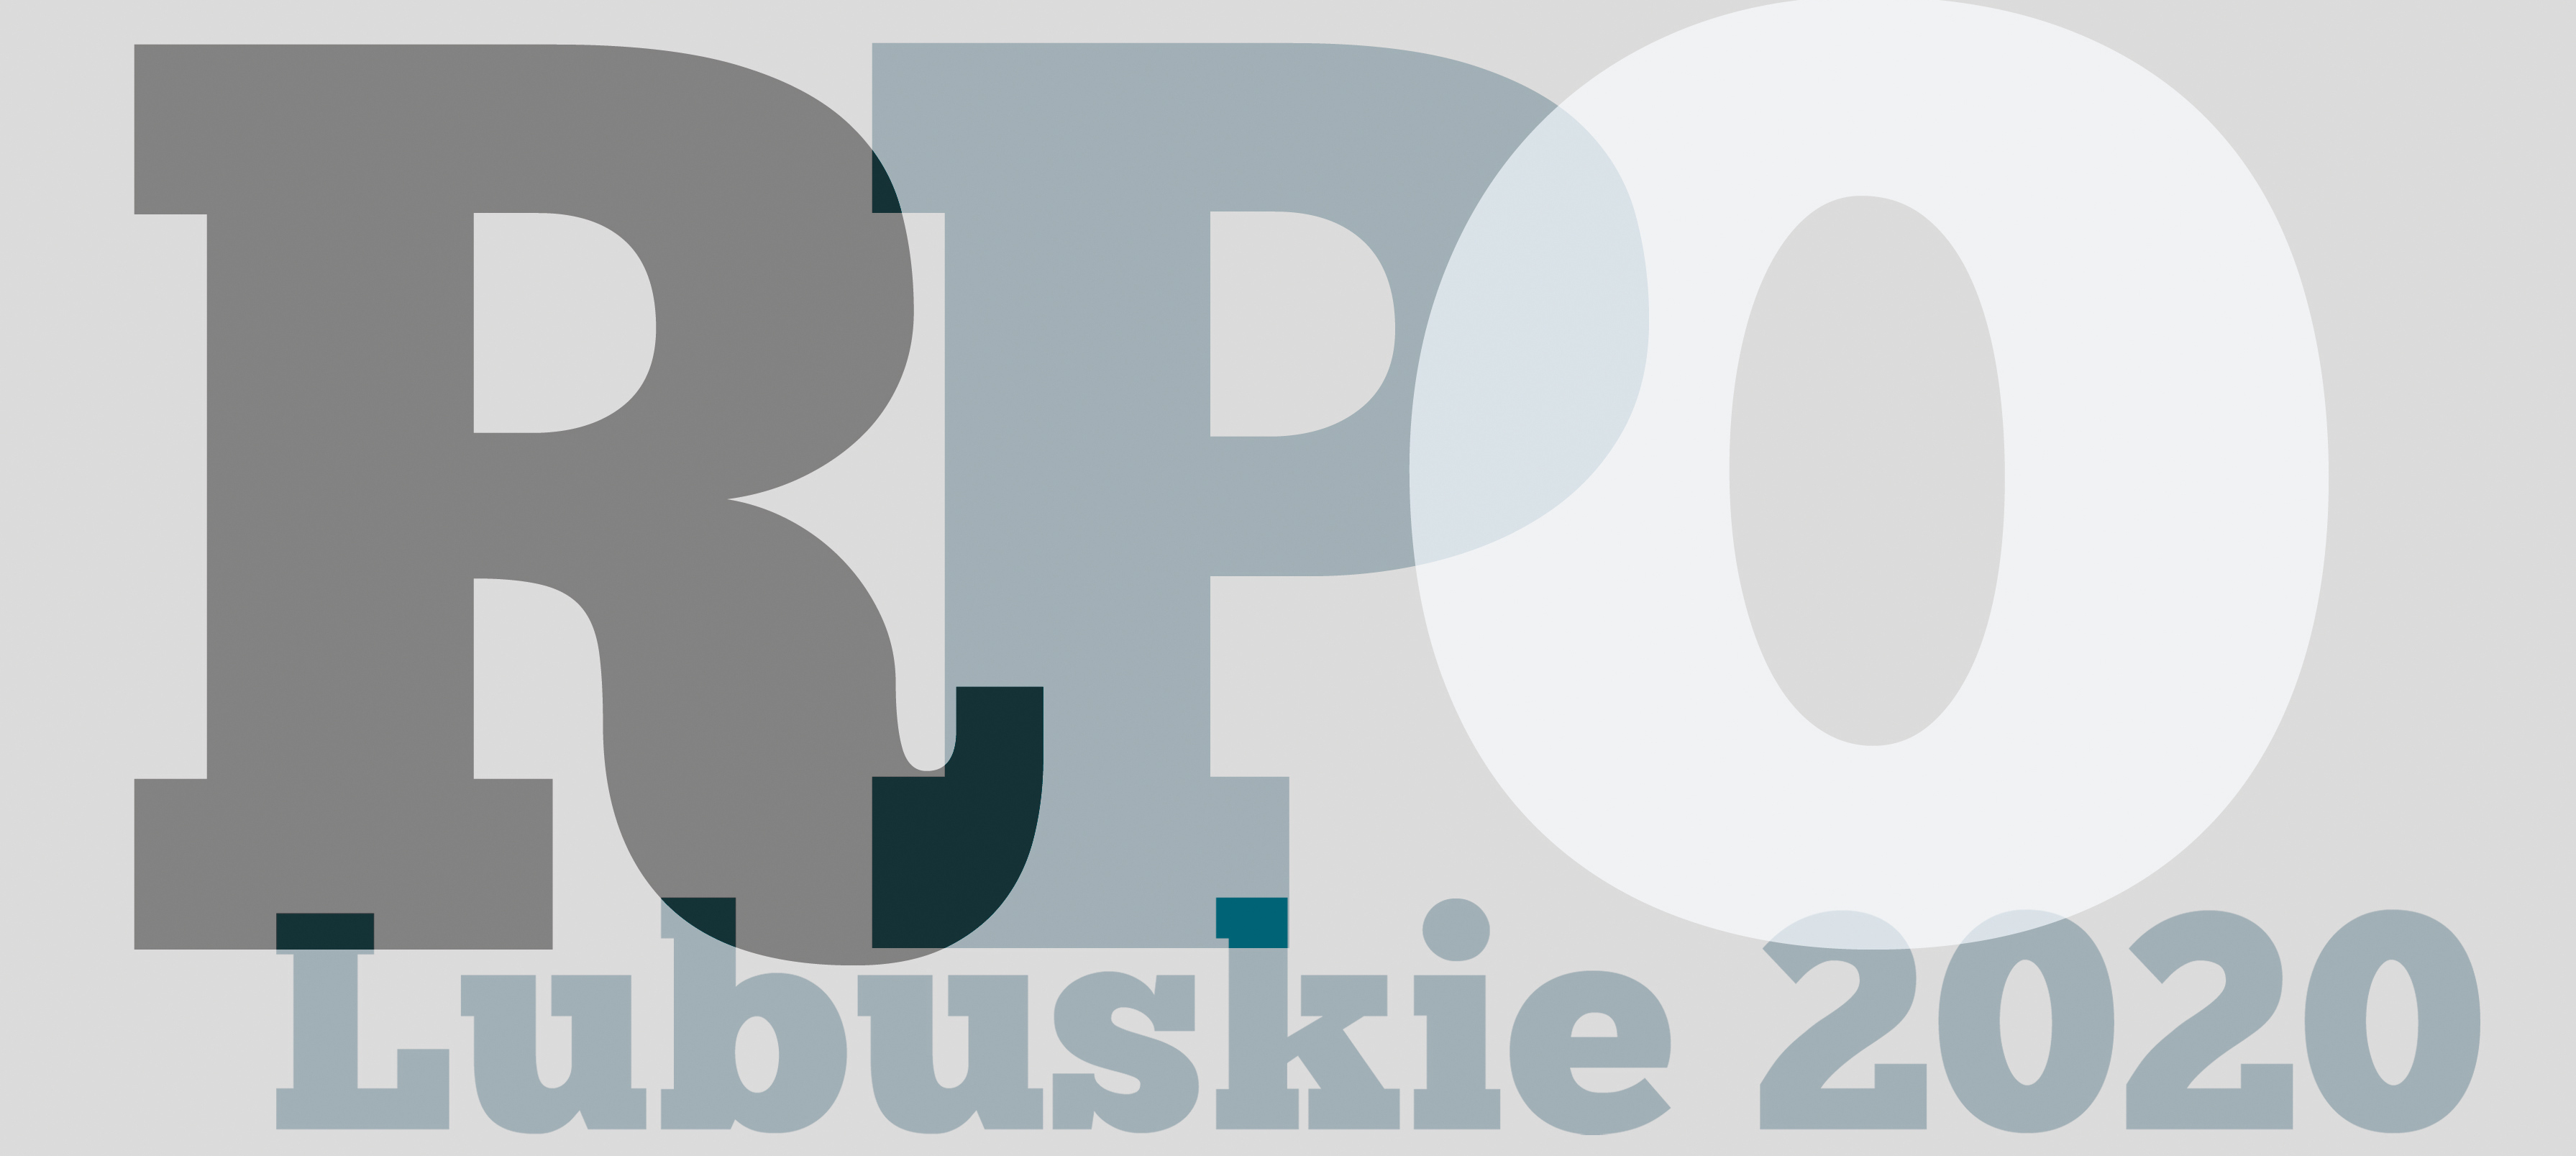 REGIONALNY PROGRAM OPERACYJNY – LUBUSKIE 2020